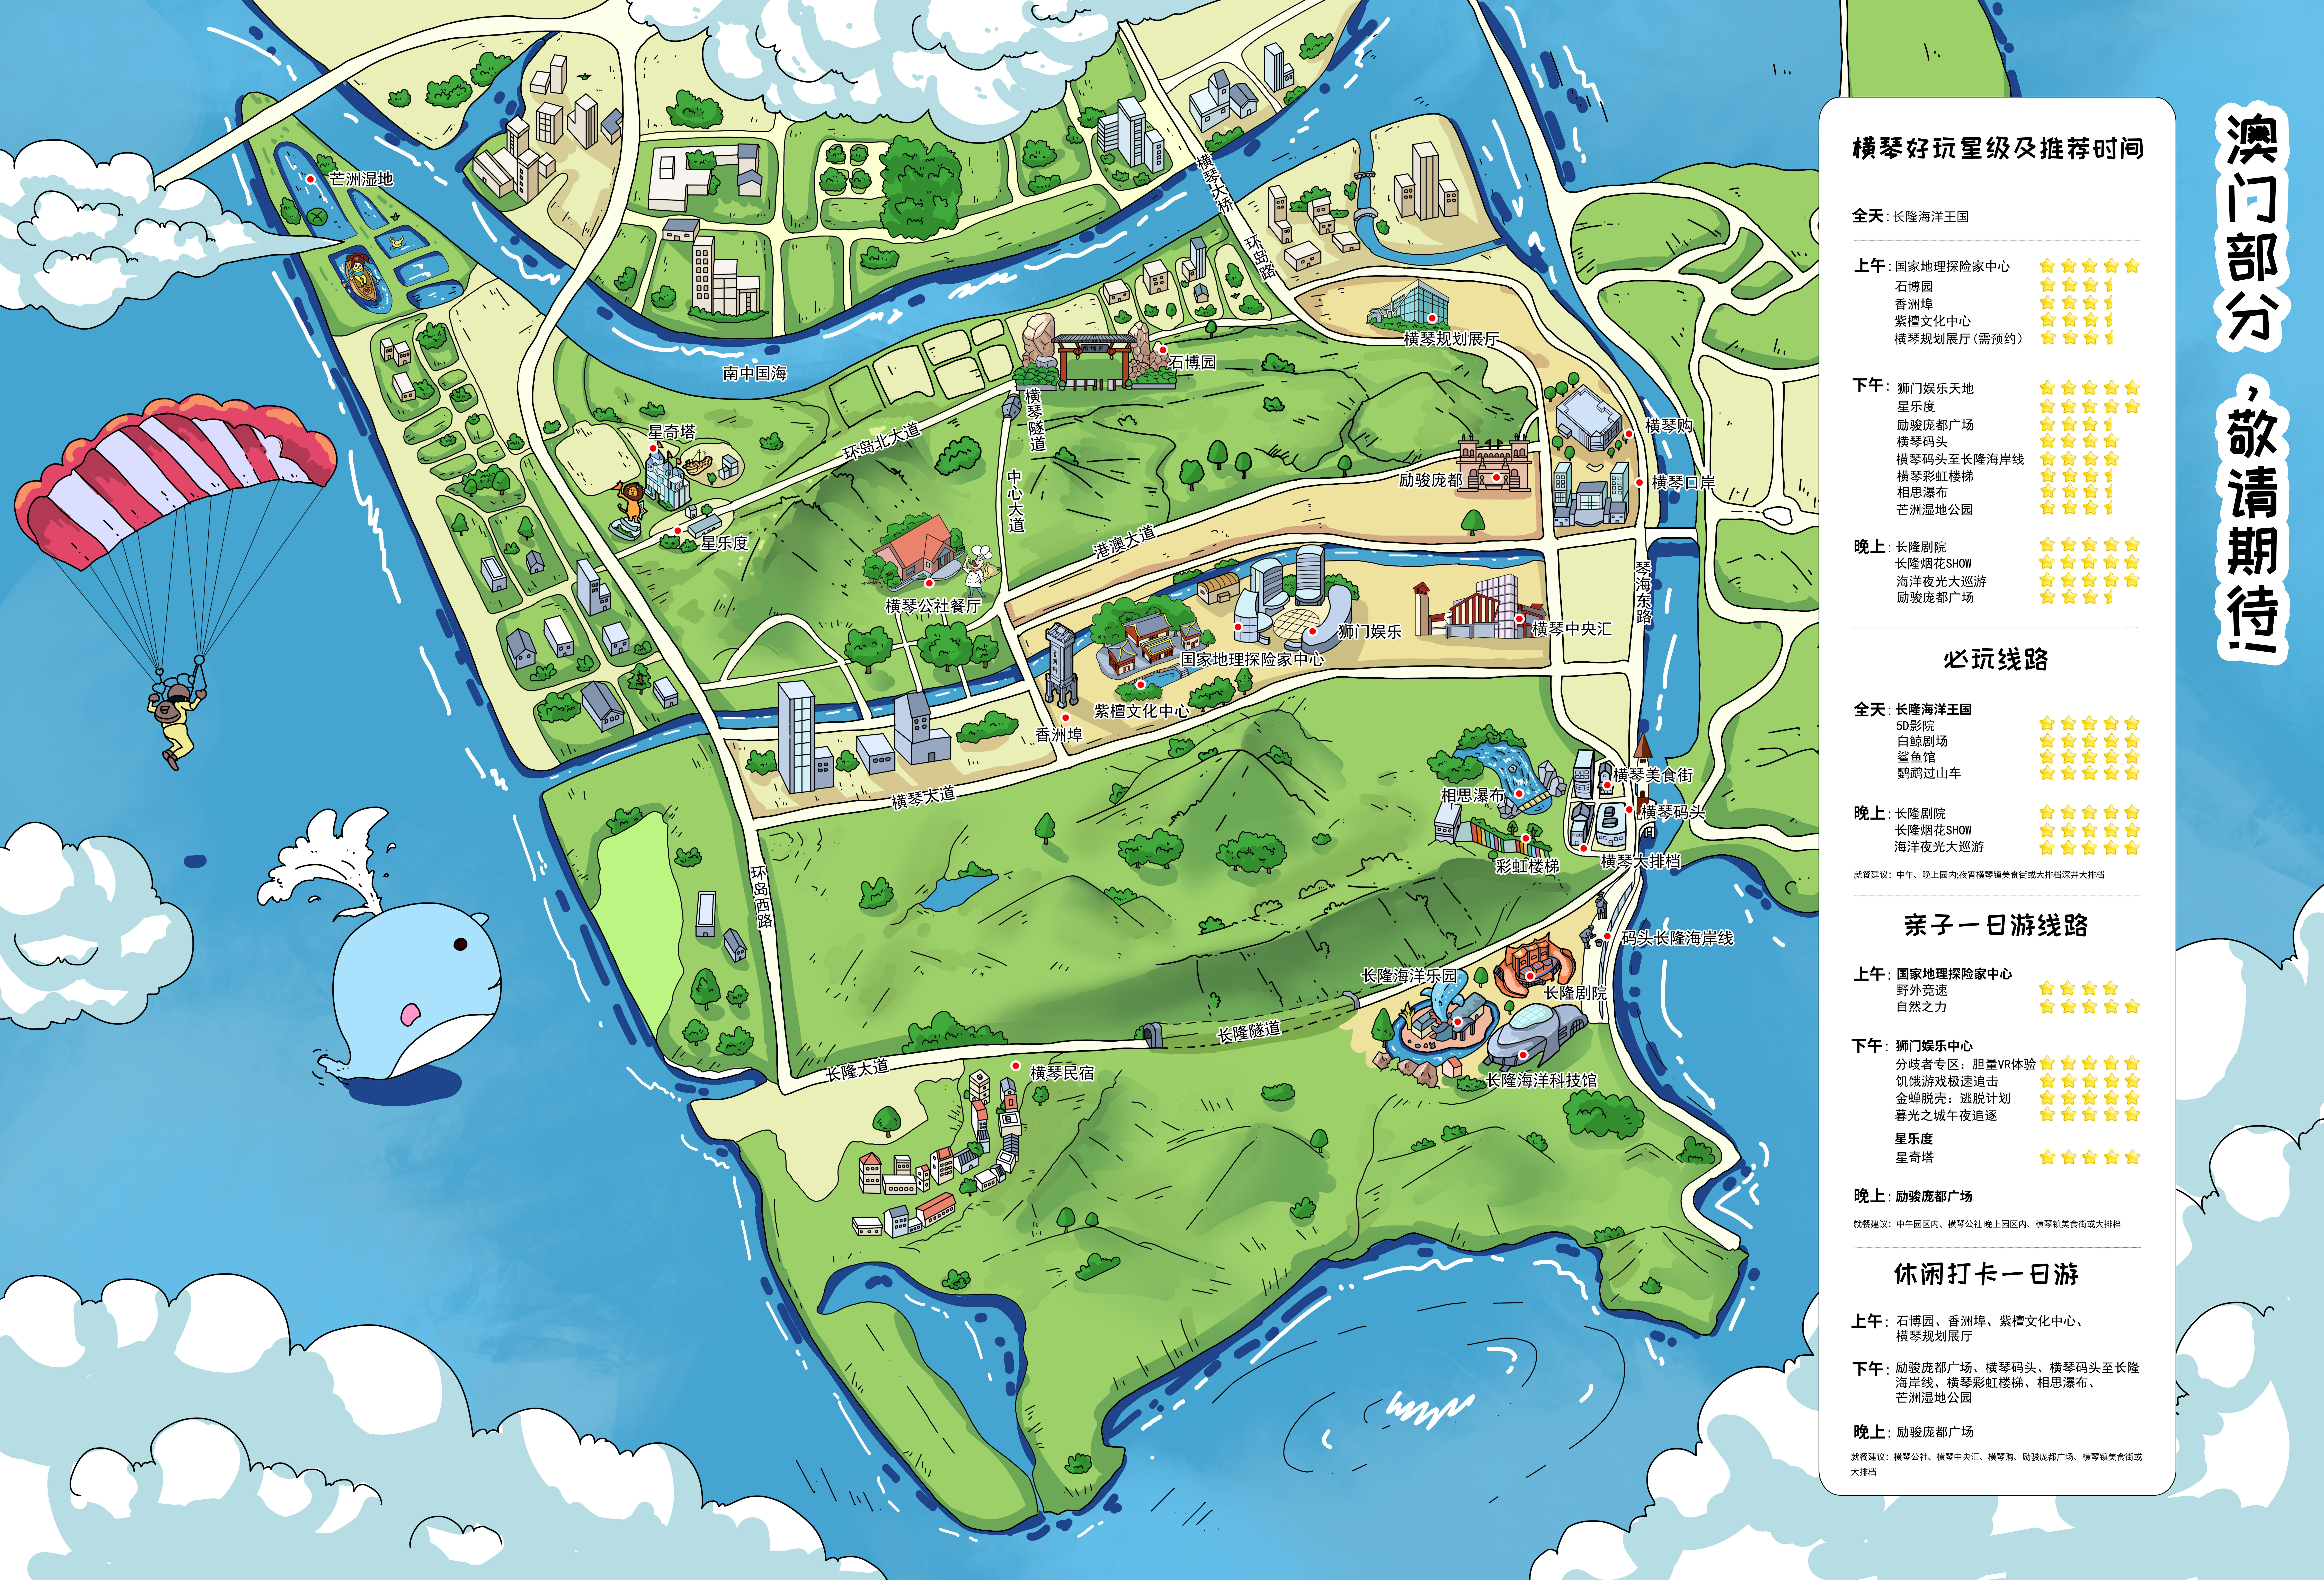 珠海旅游地图手绘图片